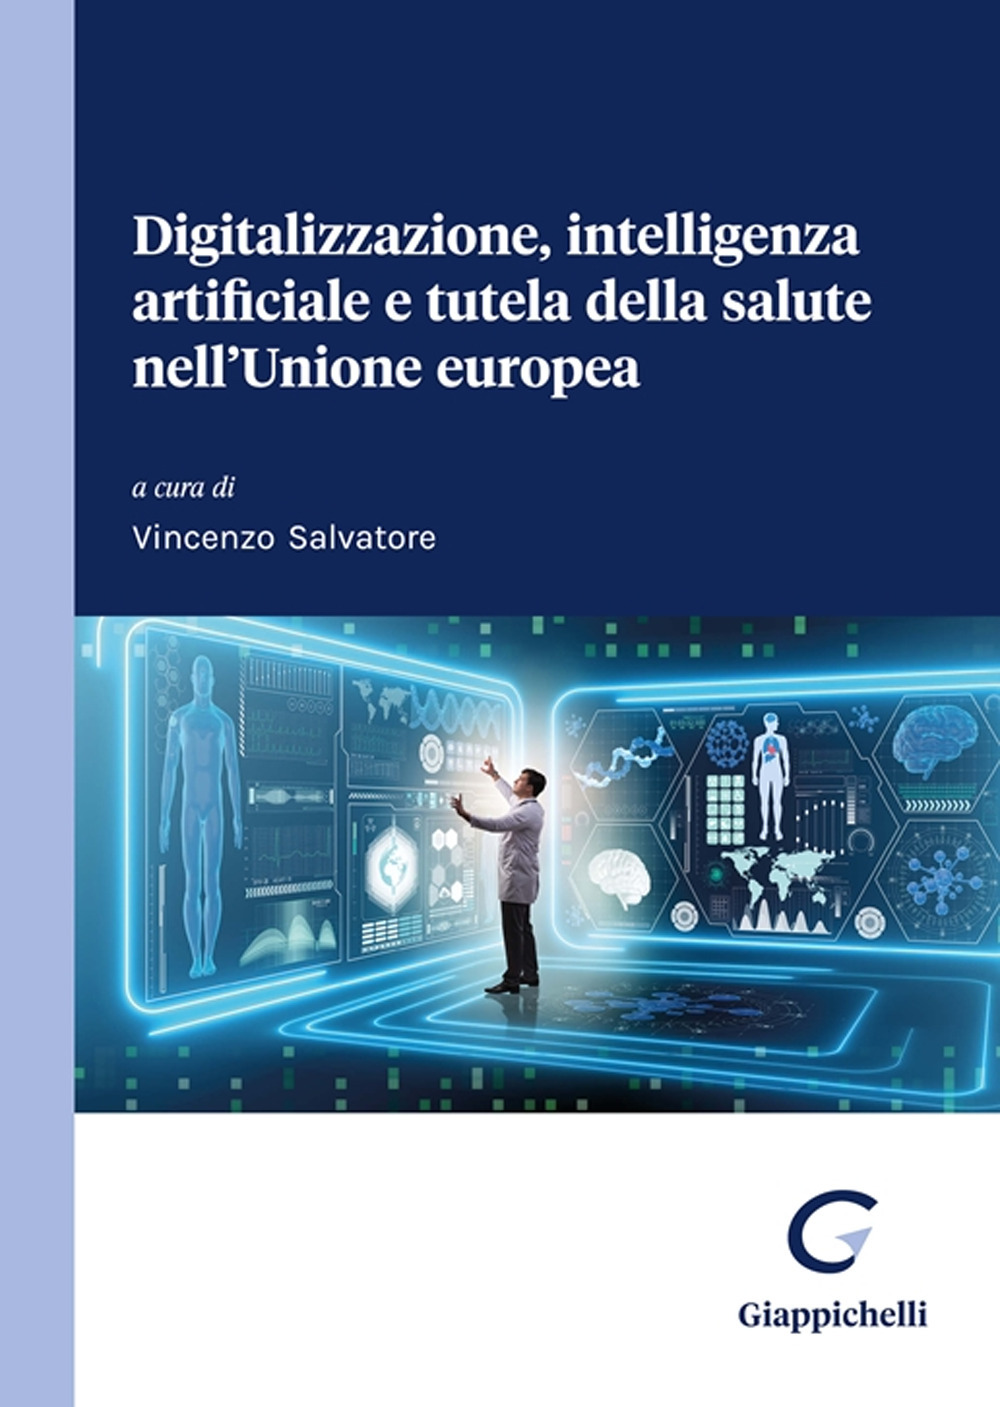 Digitalizzazione, intelligenza artificiale e tutela della salute nell'Unione europea